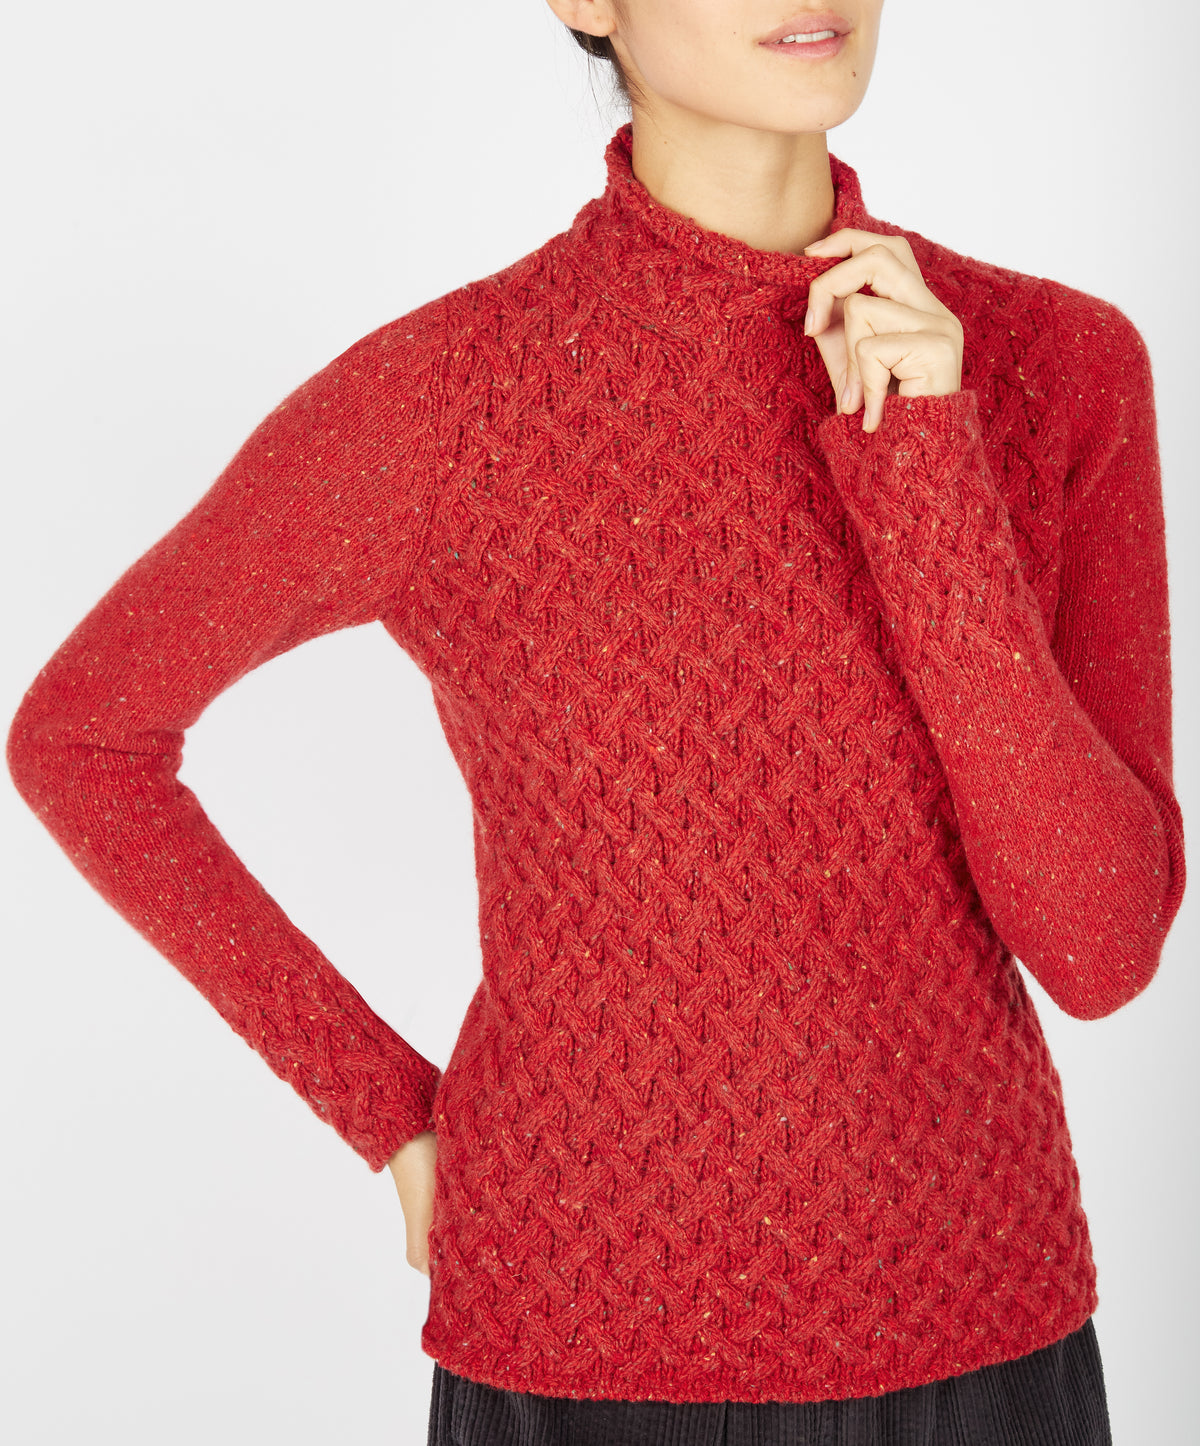 IrelandsEye Knitwear Trellis Sweater Chilli